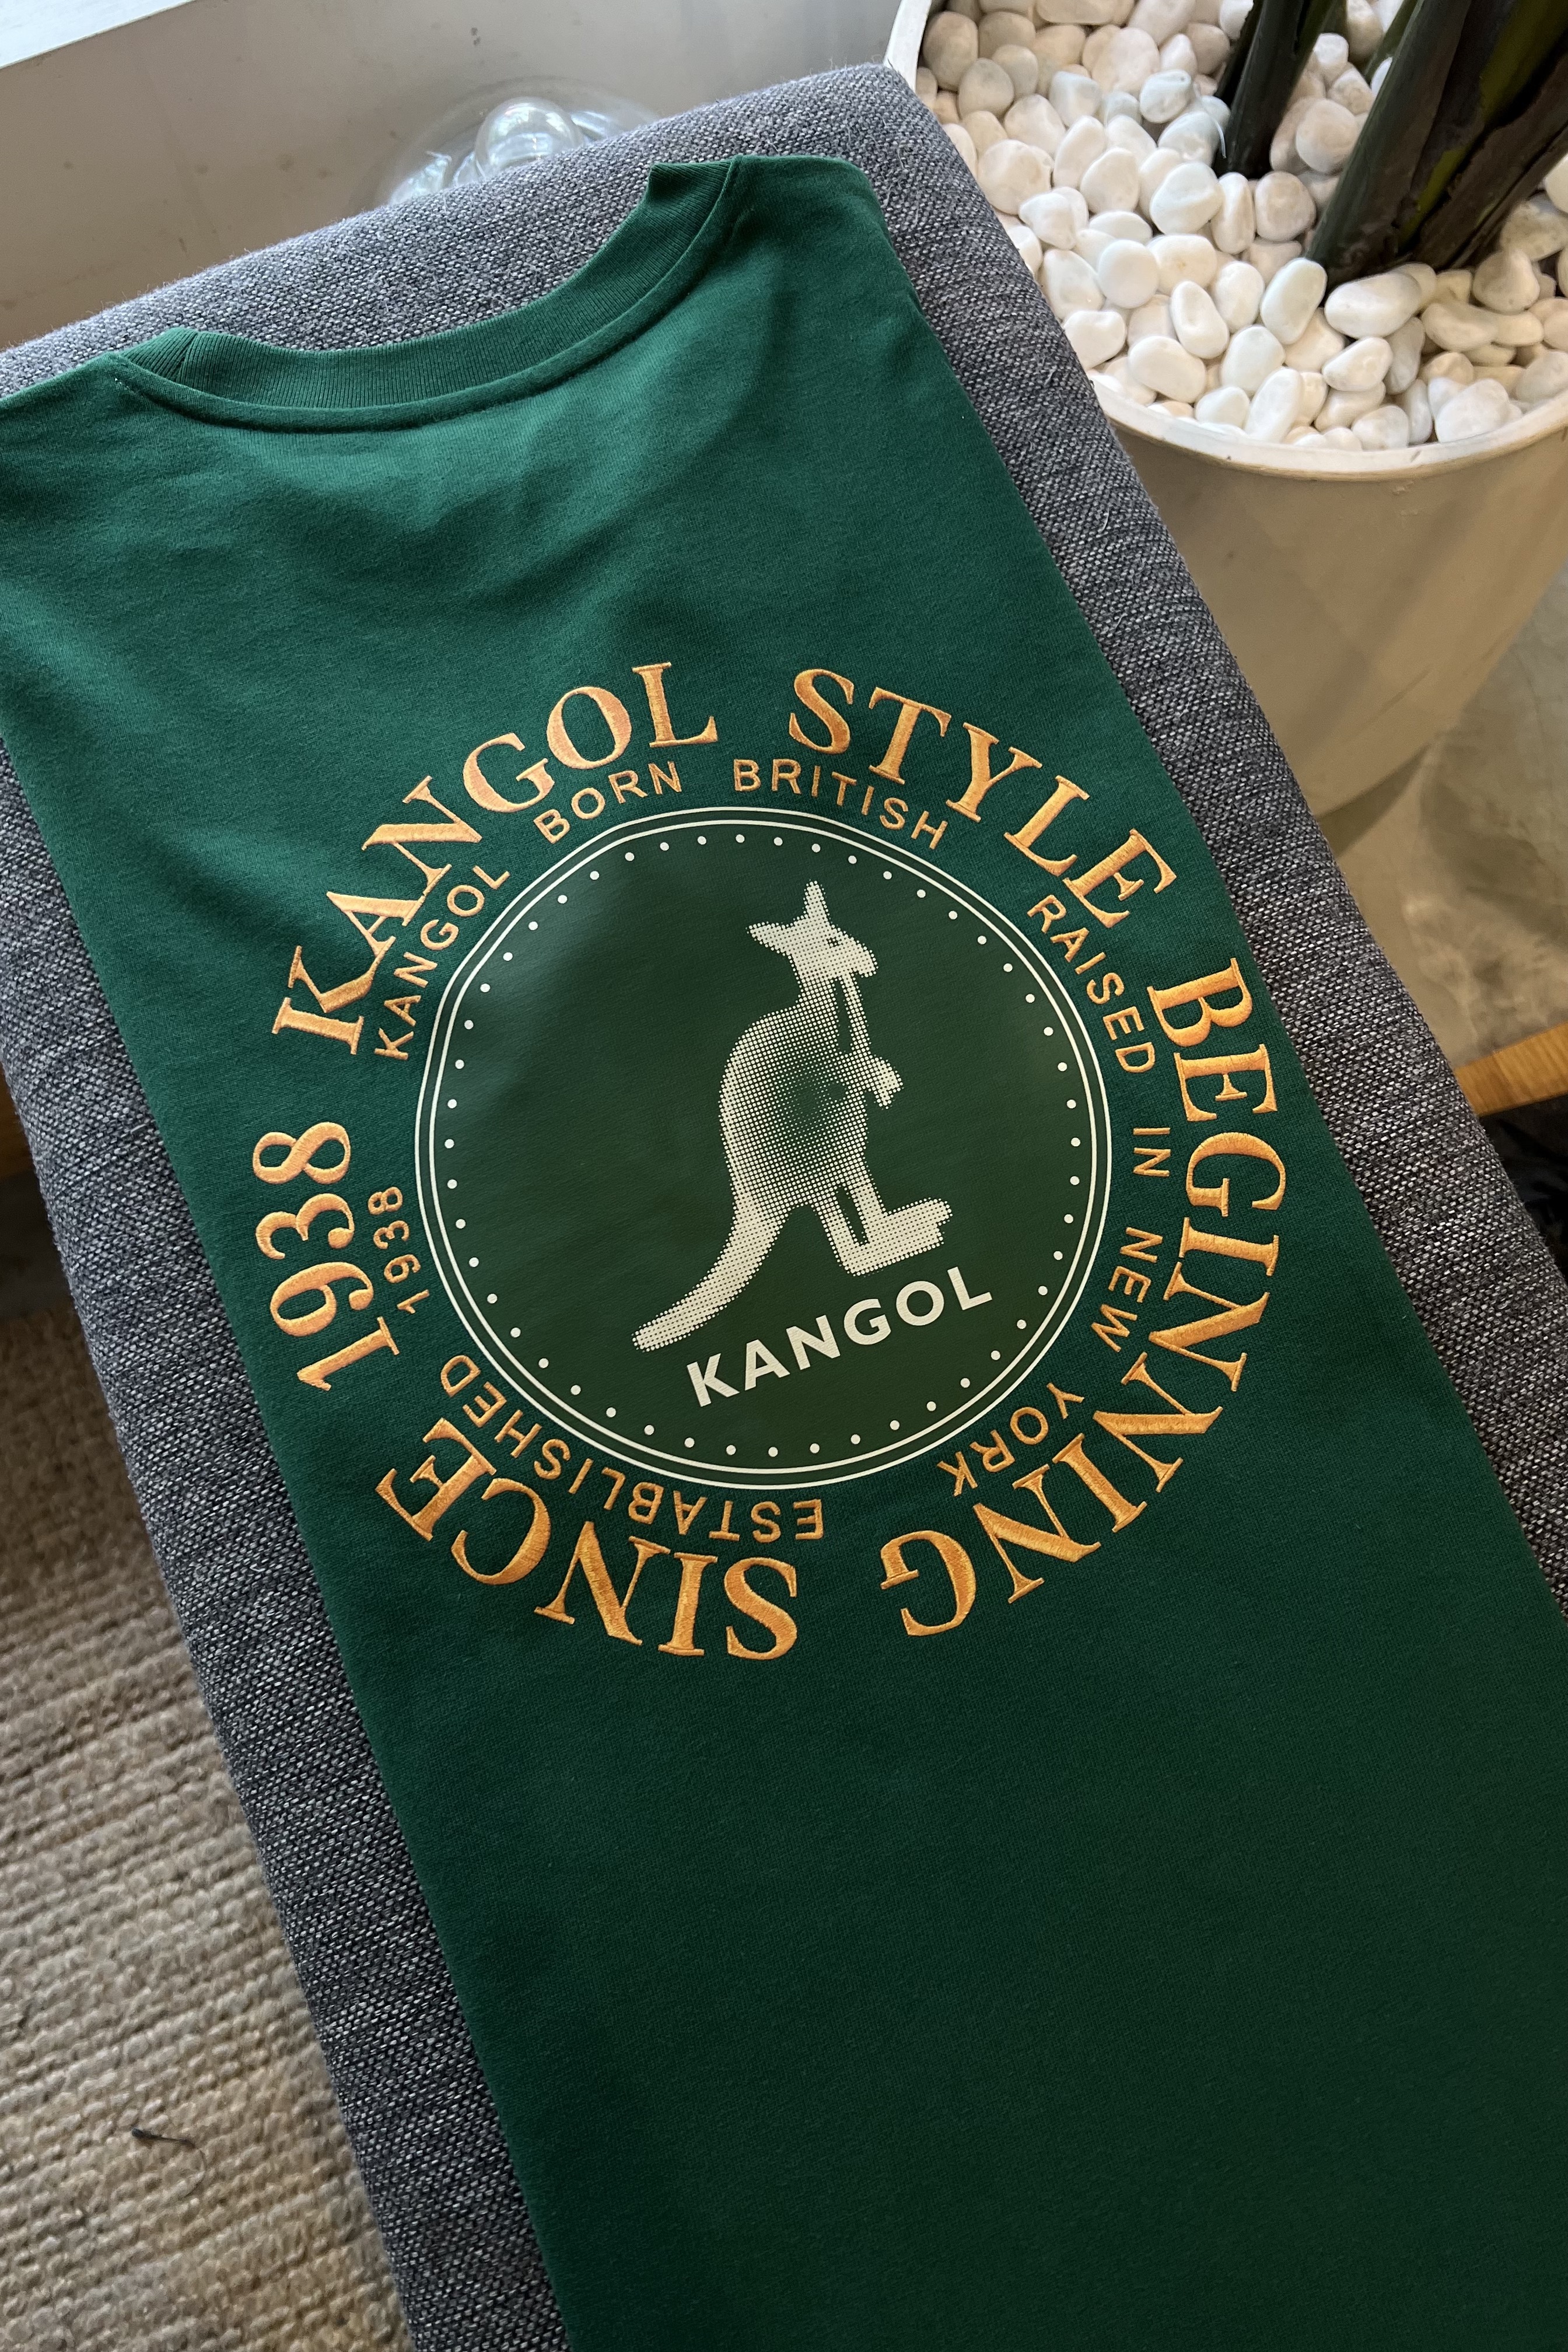 Kangol Ground Tee | Goodluck Bunch